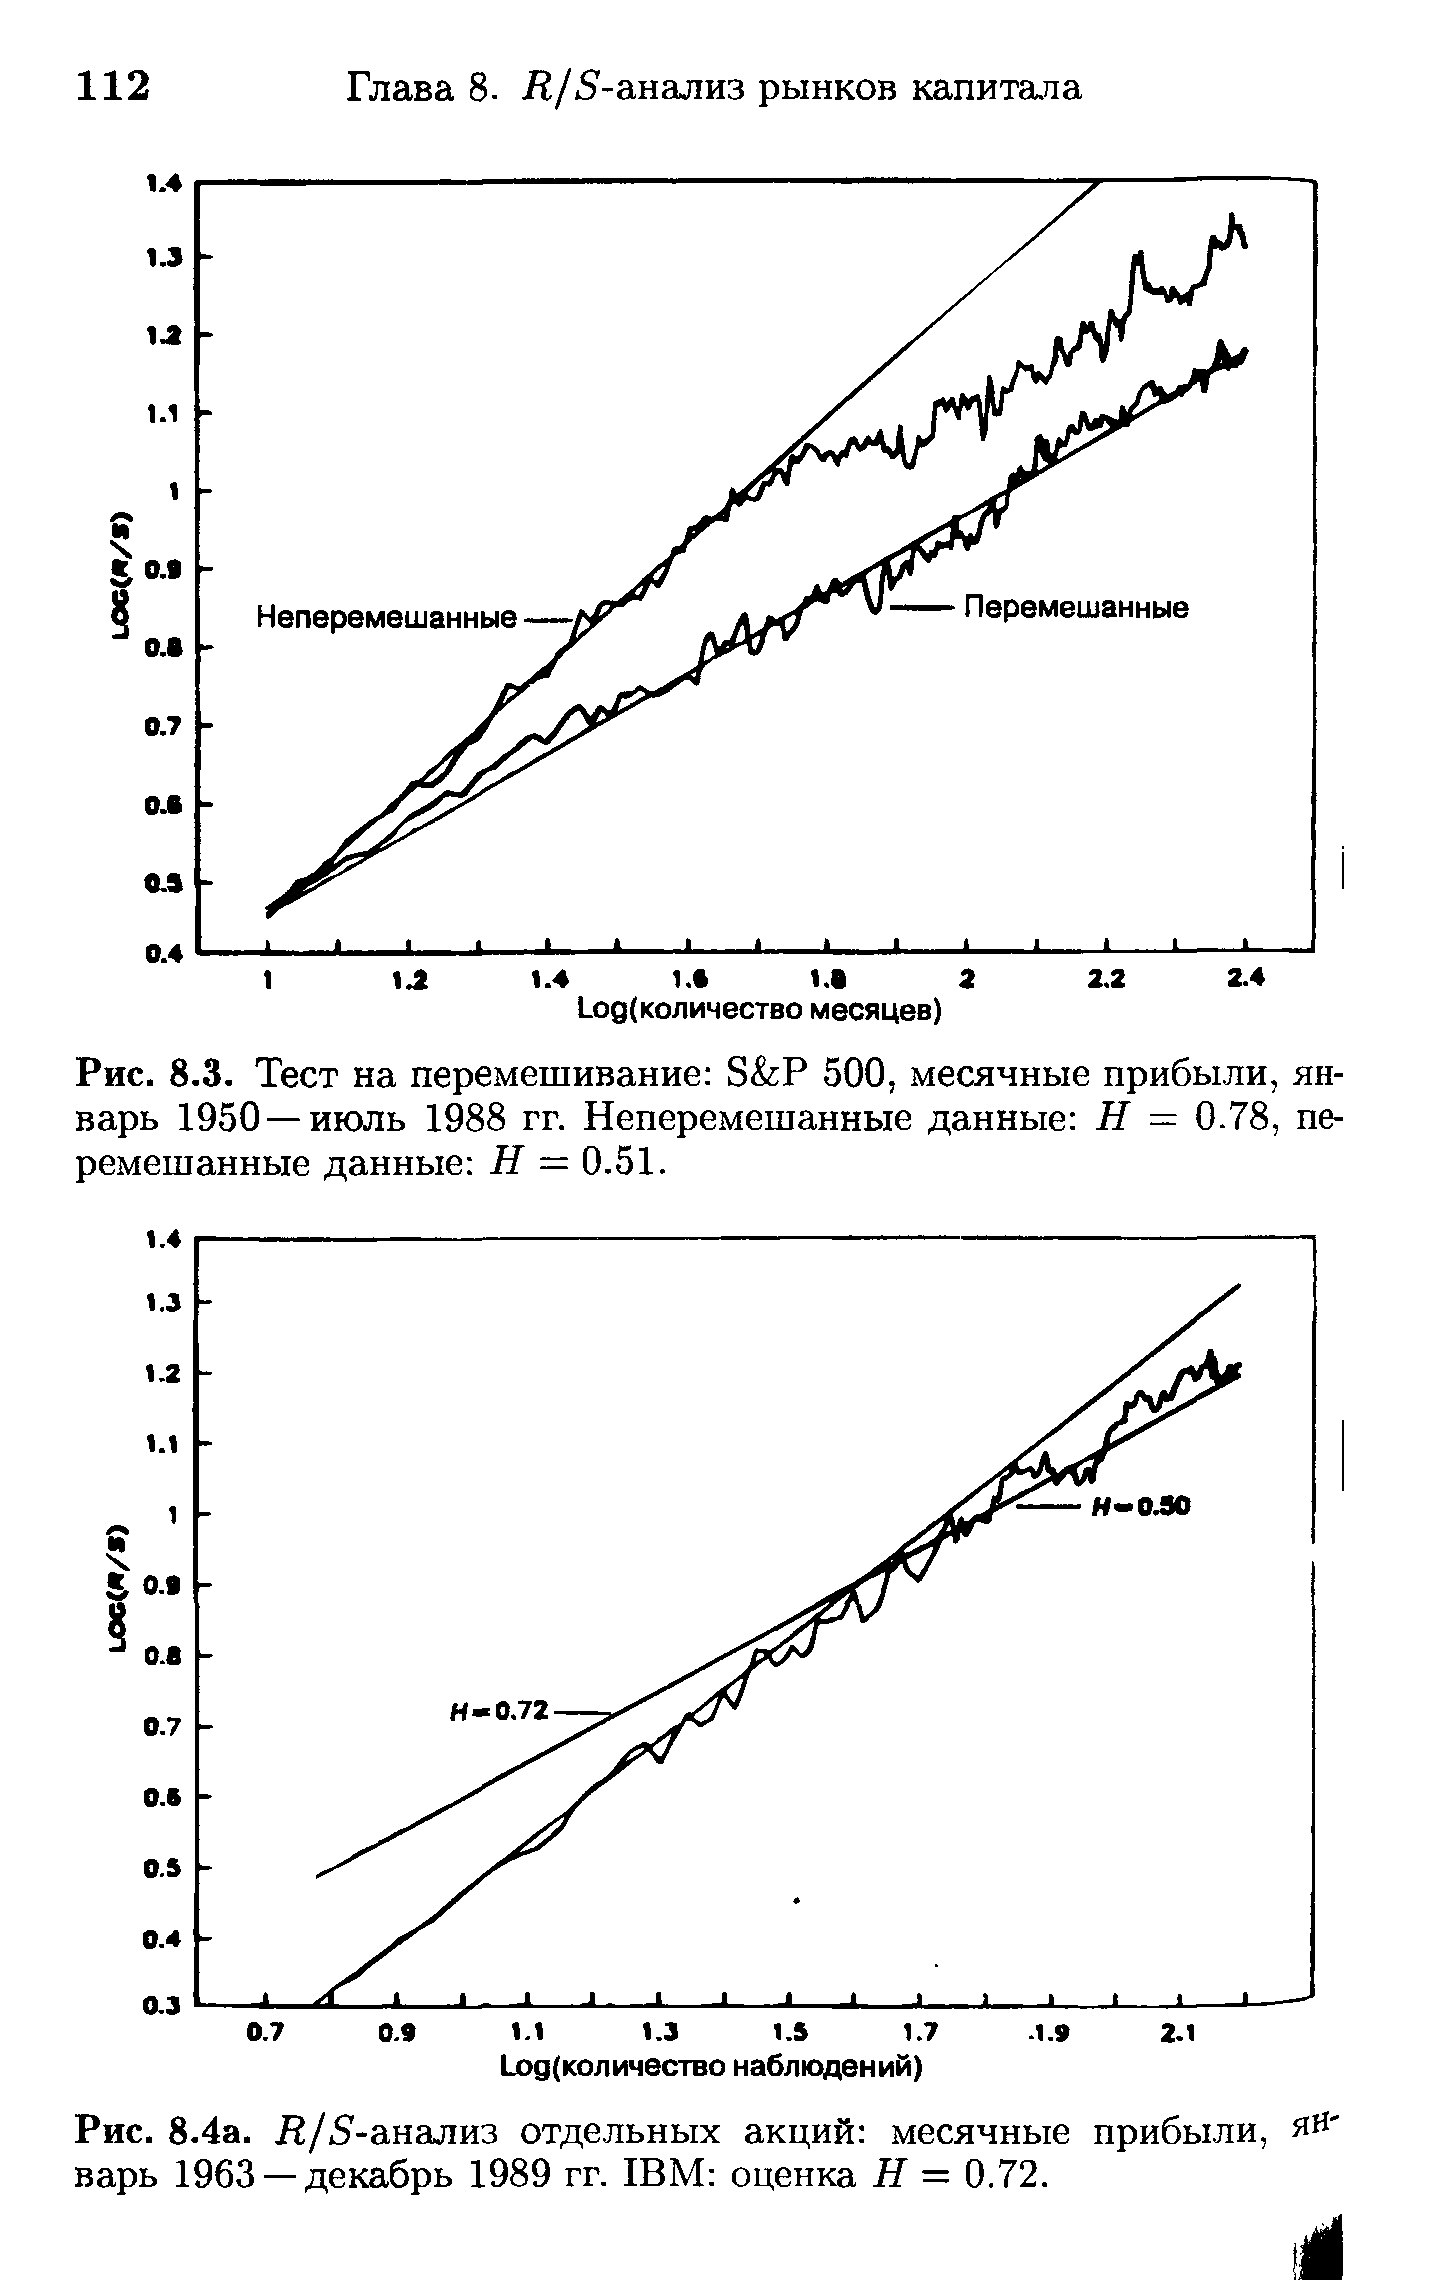 Рис. 8.4а. Л/5-анализ отдельных акций месячные прибыли, январь 1963 —декабрь 1989 гг. IBM оценка Я = 0.72.
